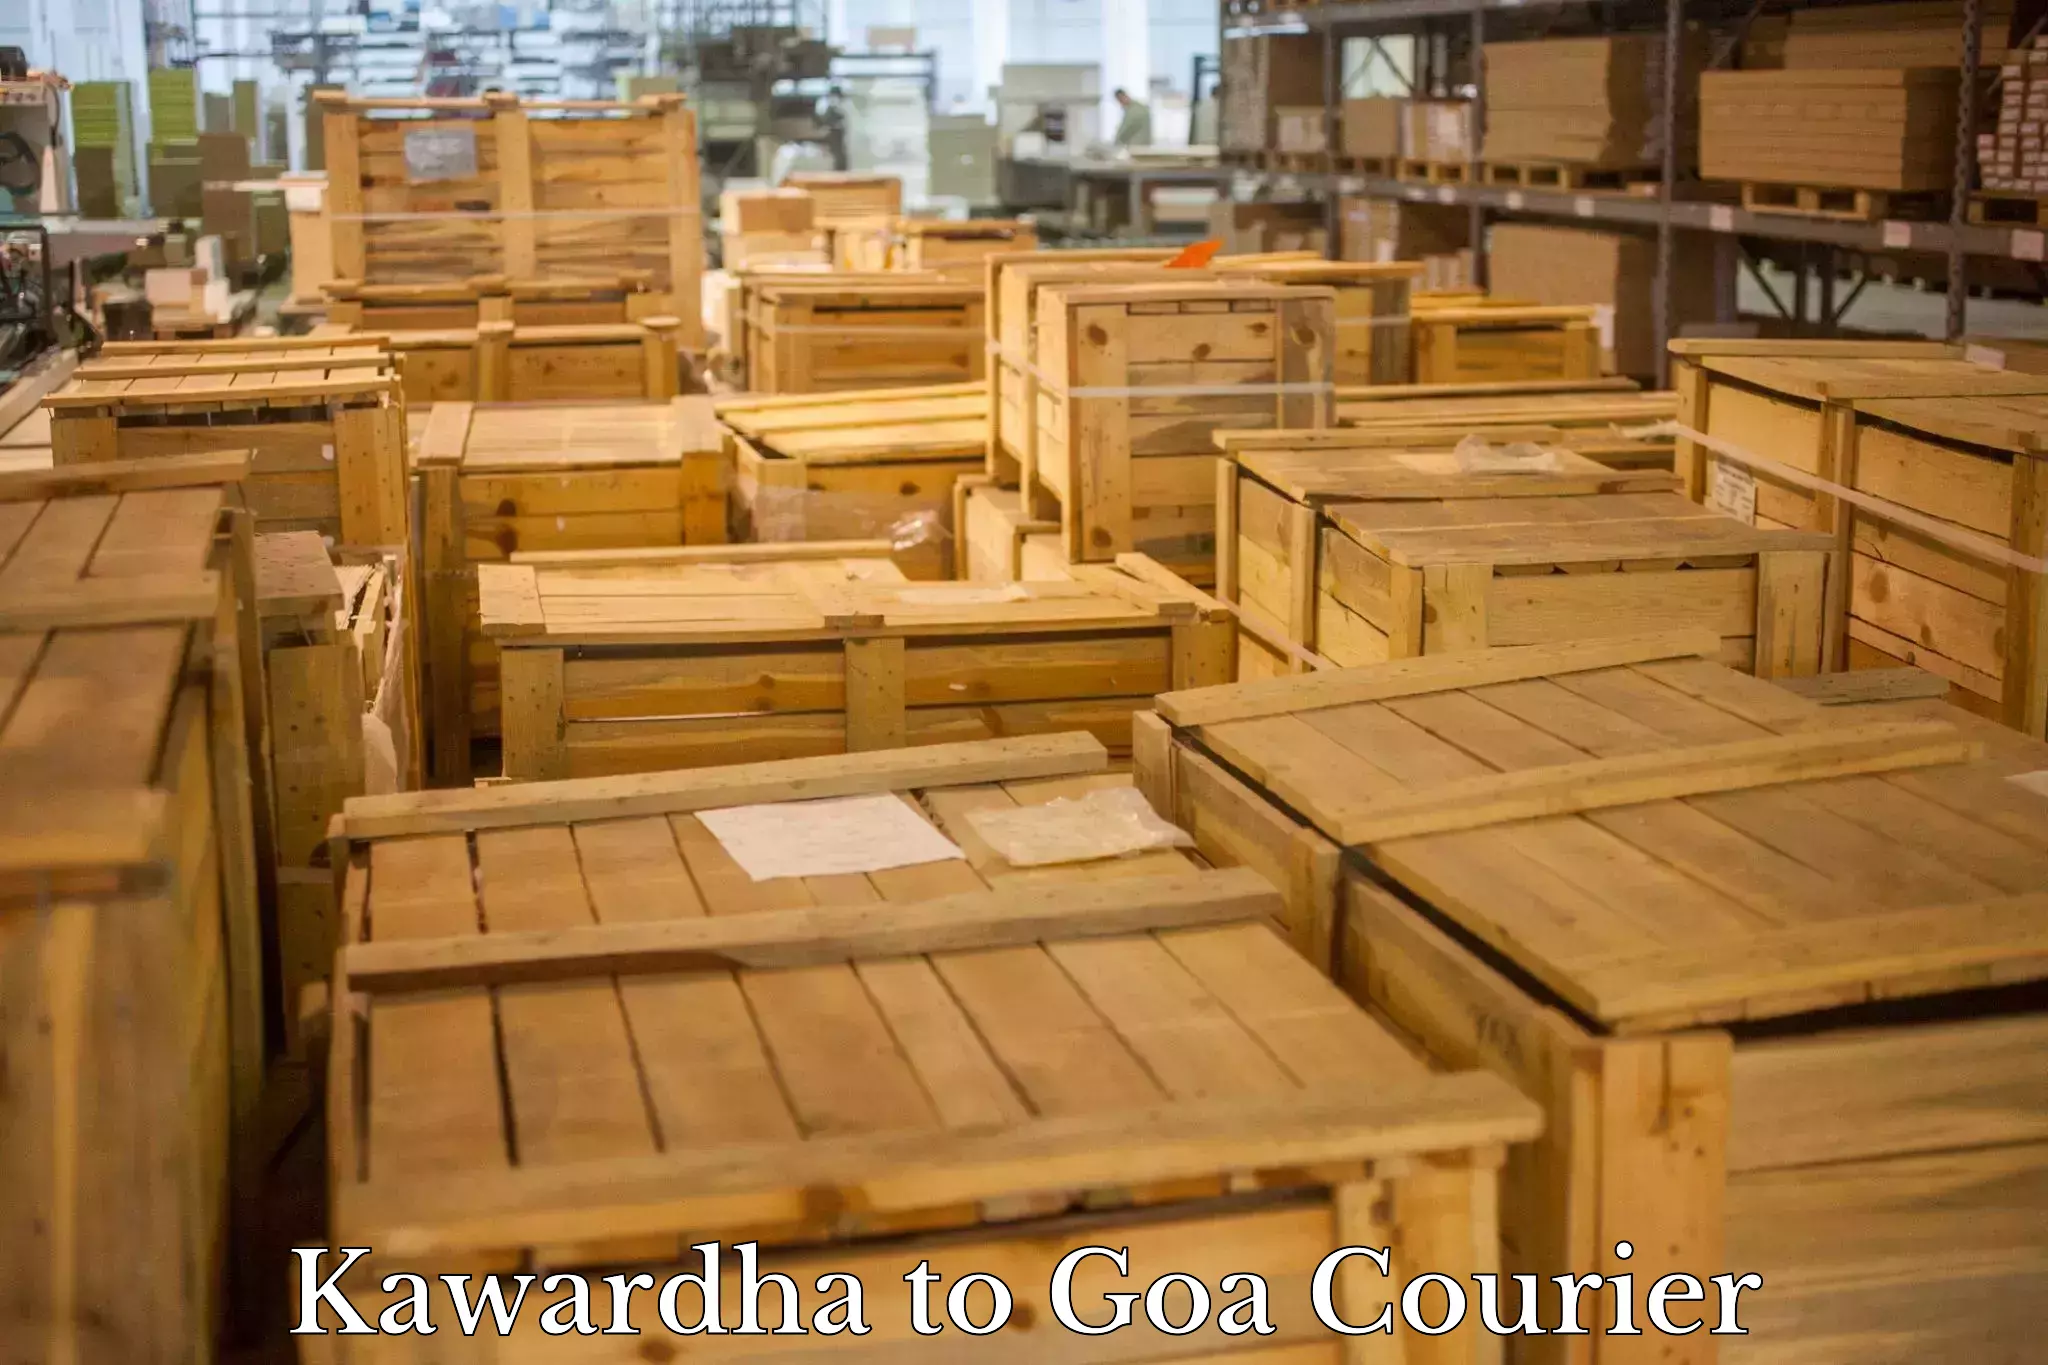 Customer-centric shipping Kawardha to Ponda